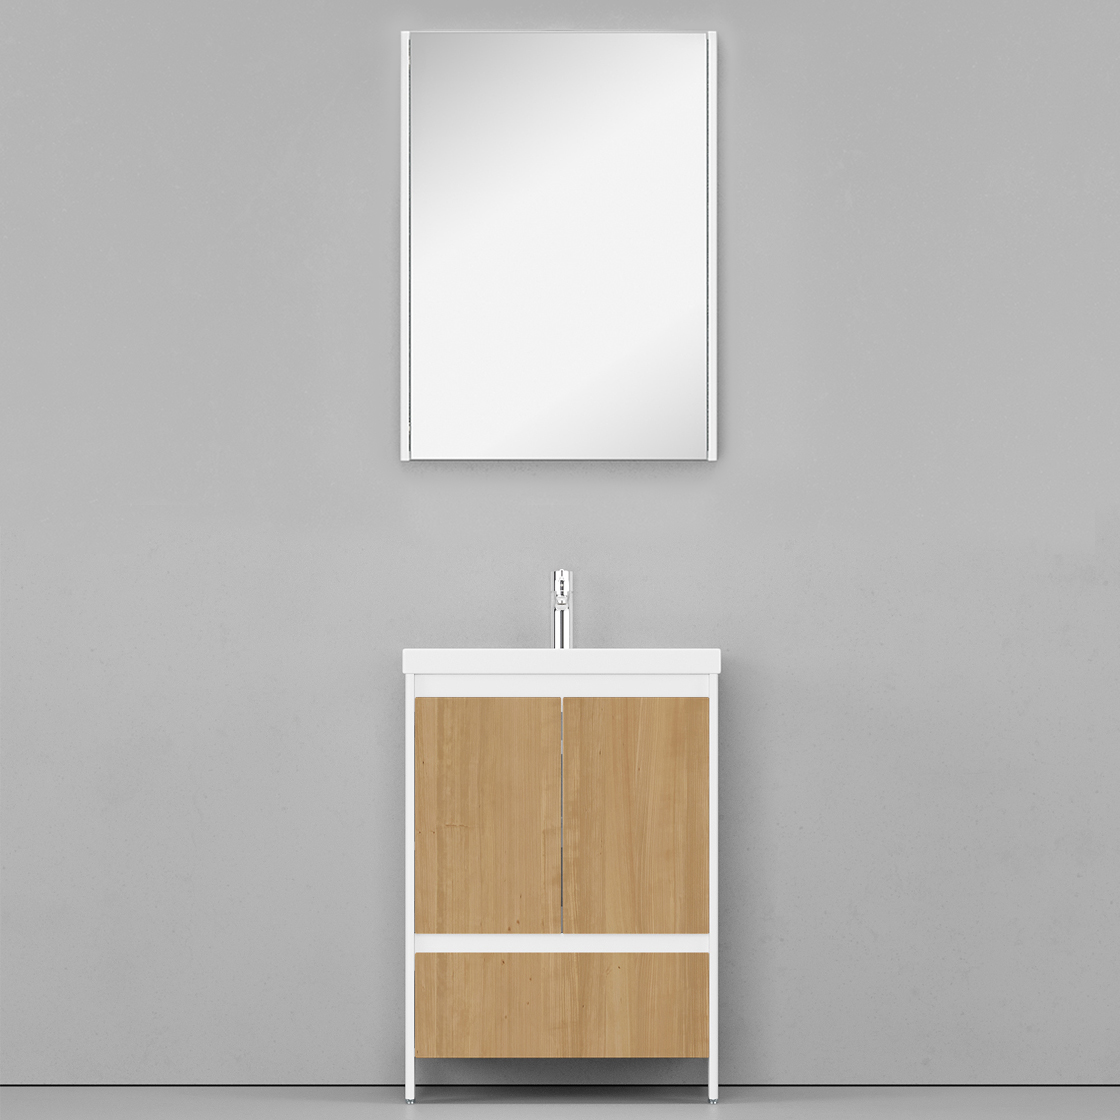 Мебель для ванной Velvex Klaufs 60.2D.1Y белый гянец/дерево